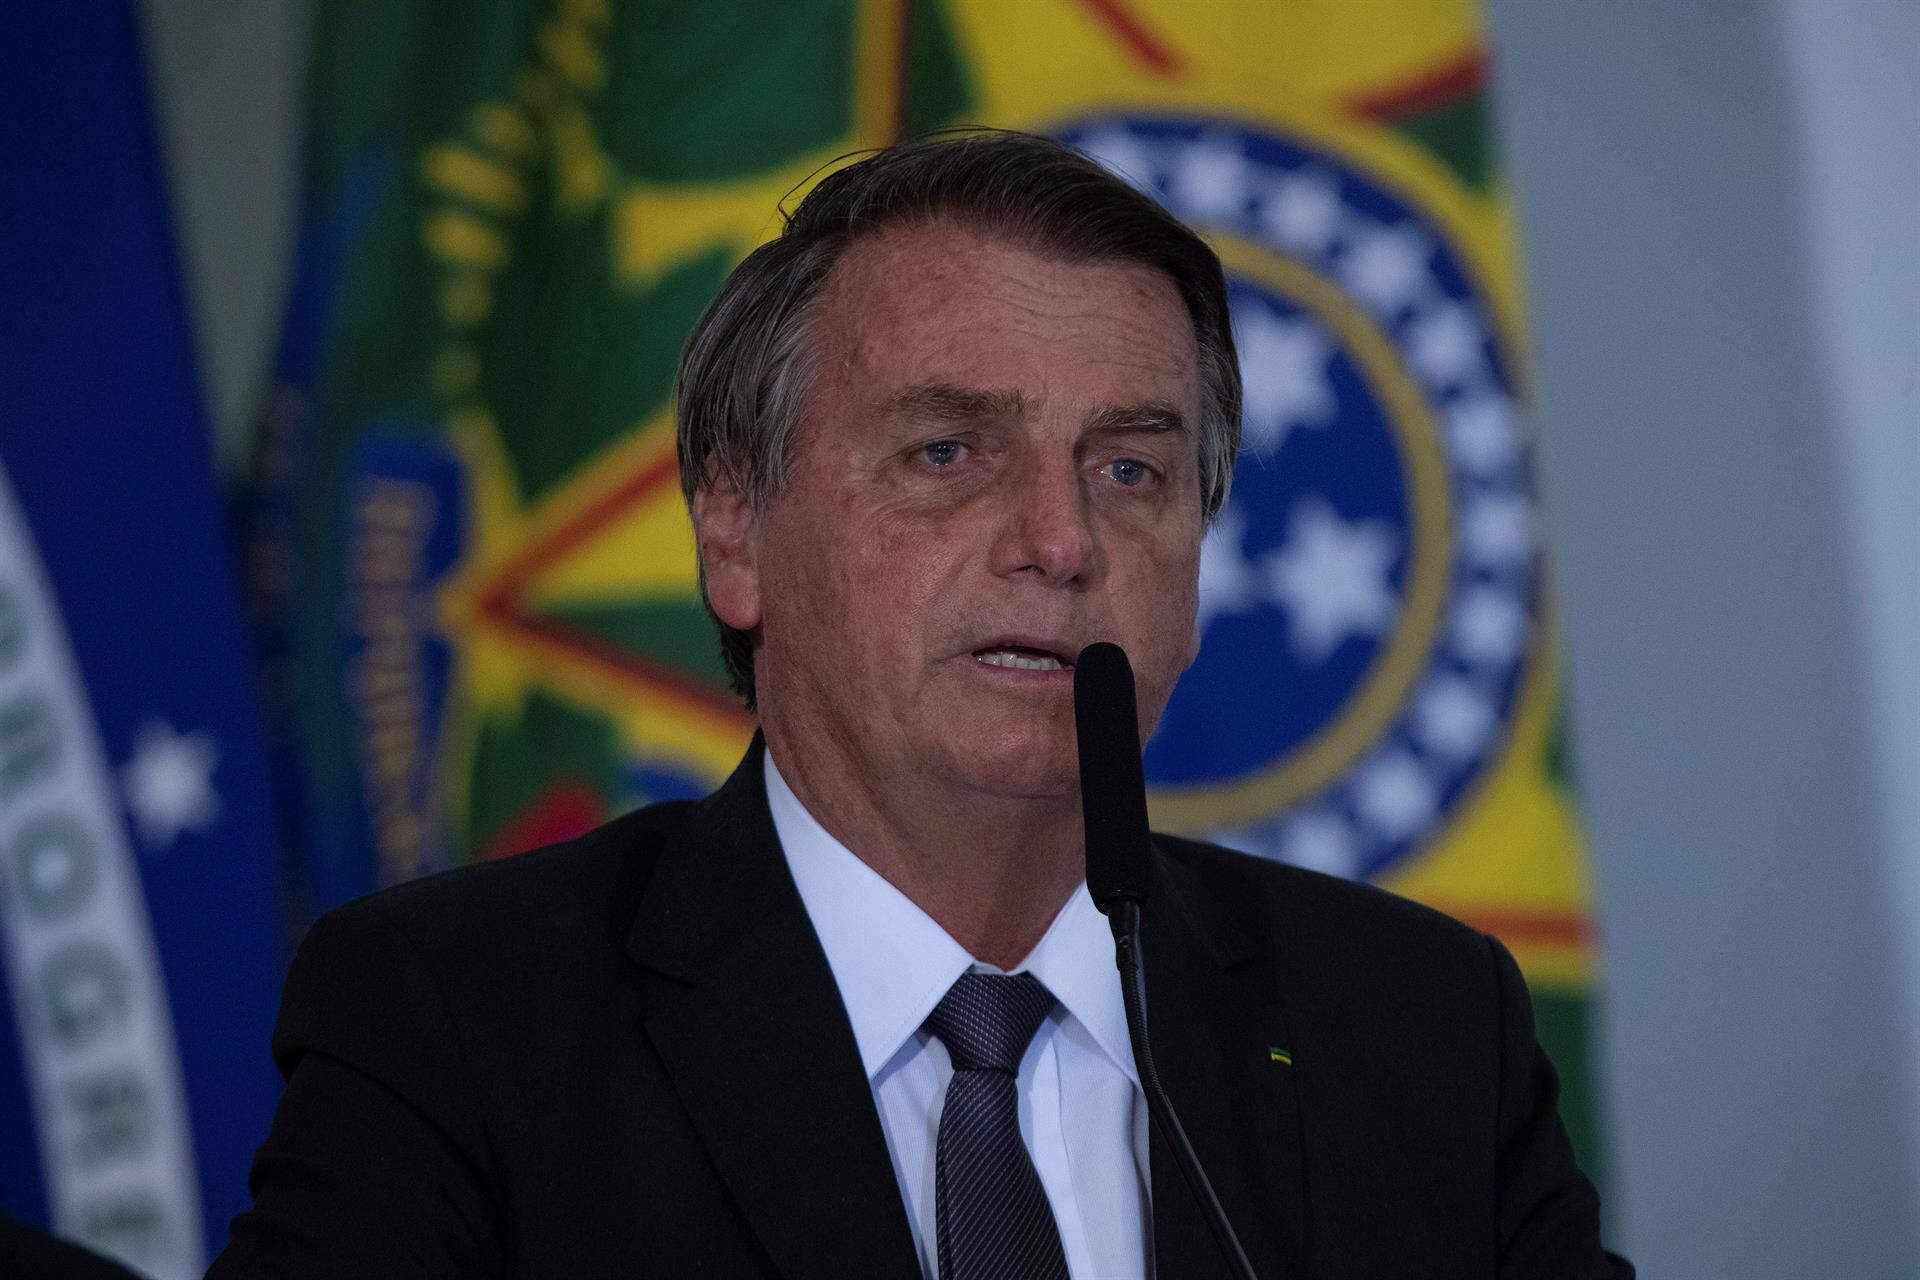 Jair Bolsonaro defiende a no vacunados contra el Covid-19; “la libertad debe ser respetada”